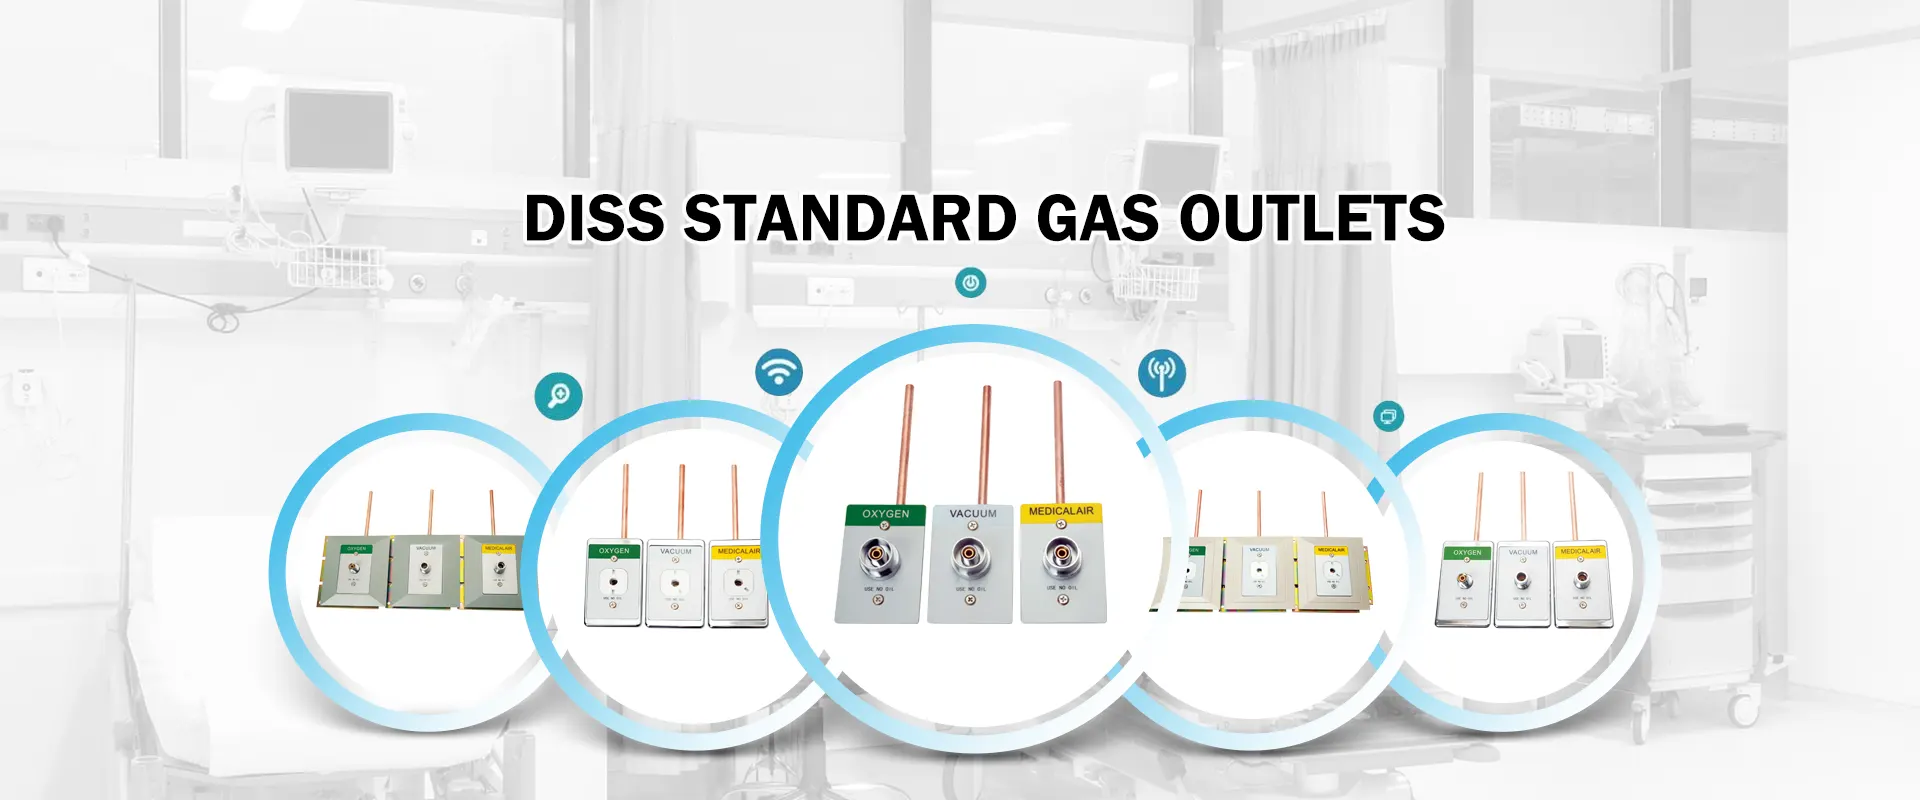 Kina Diss Standard Gas Outlets fremstiller